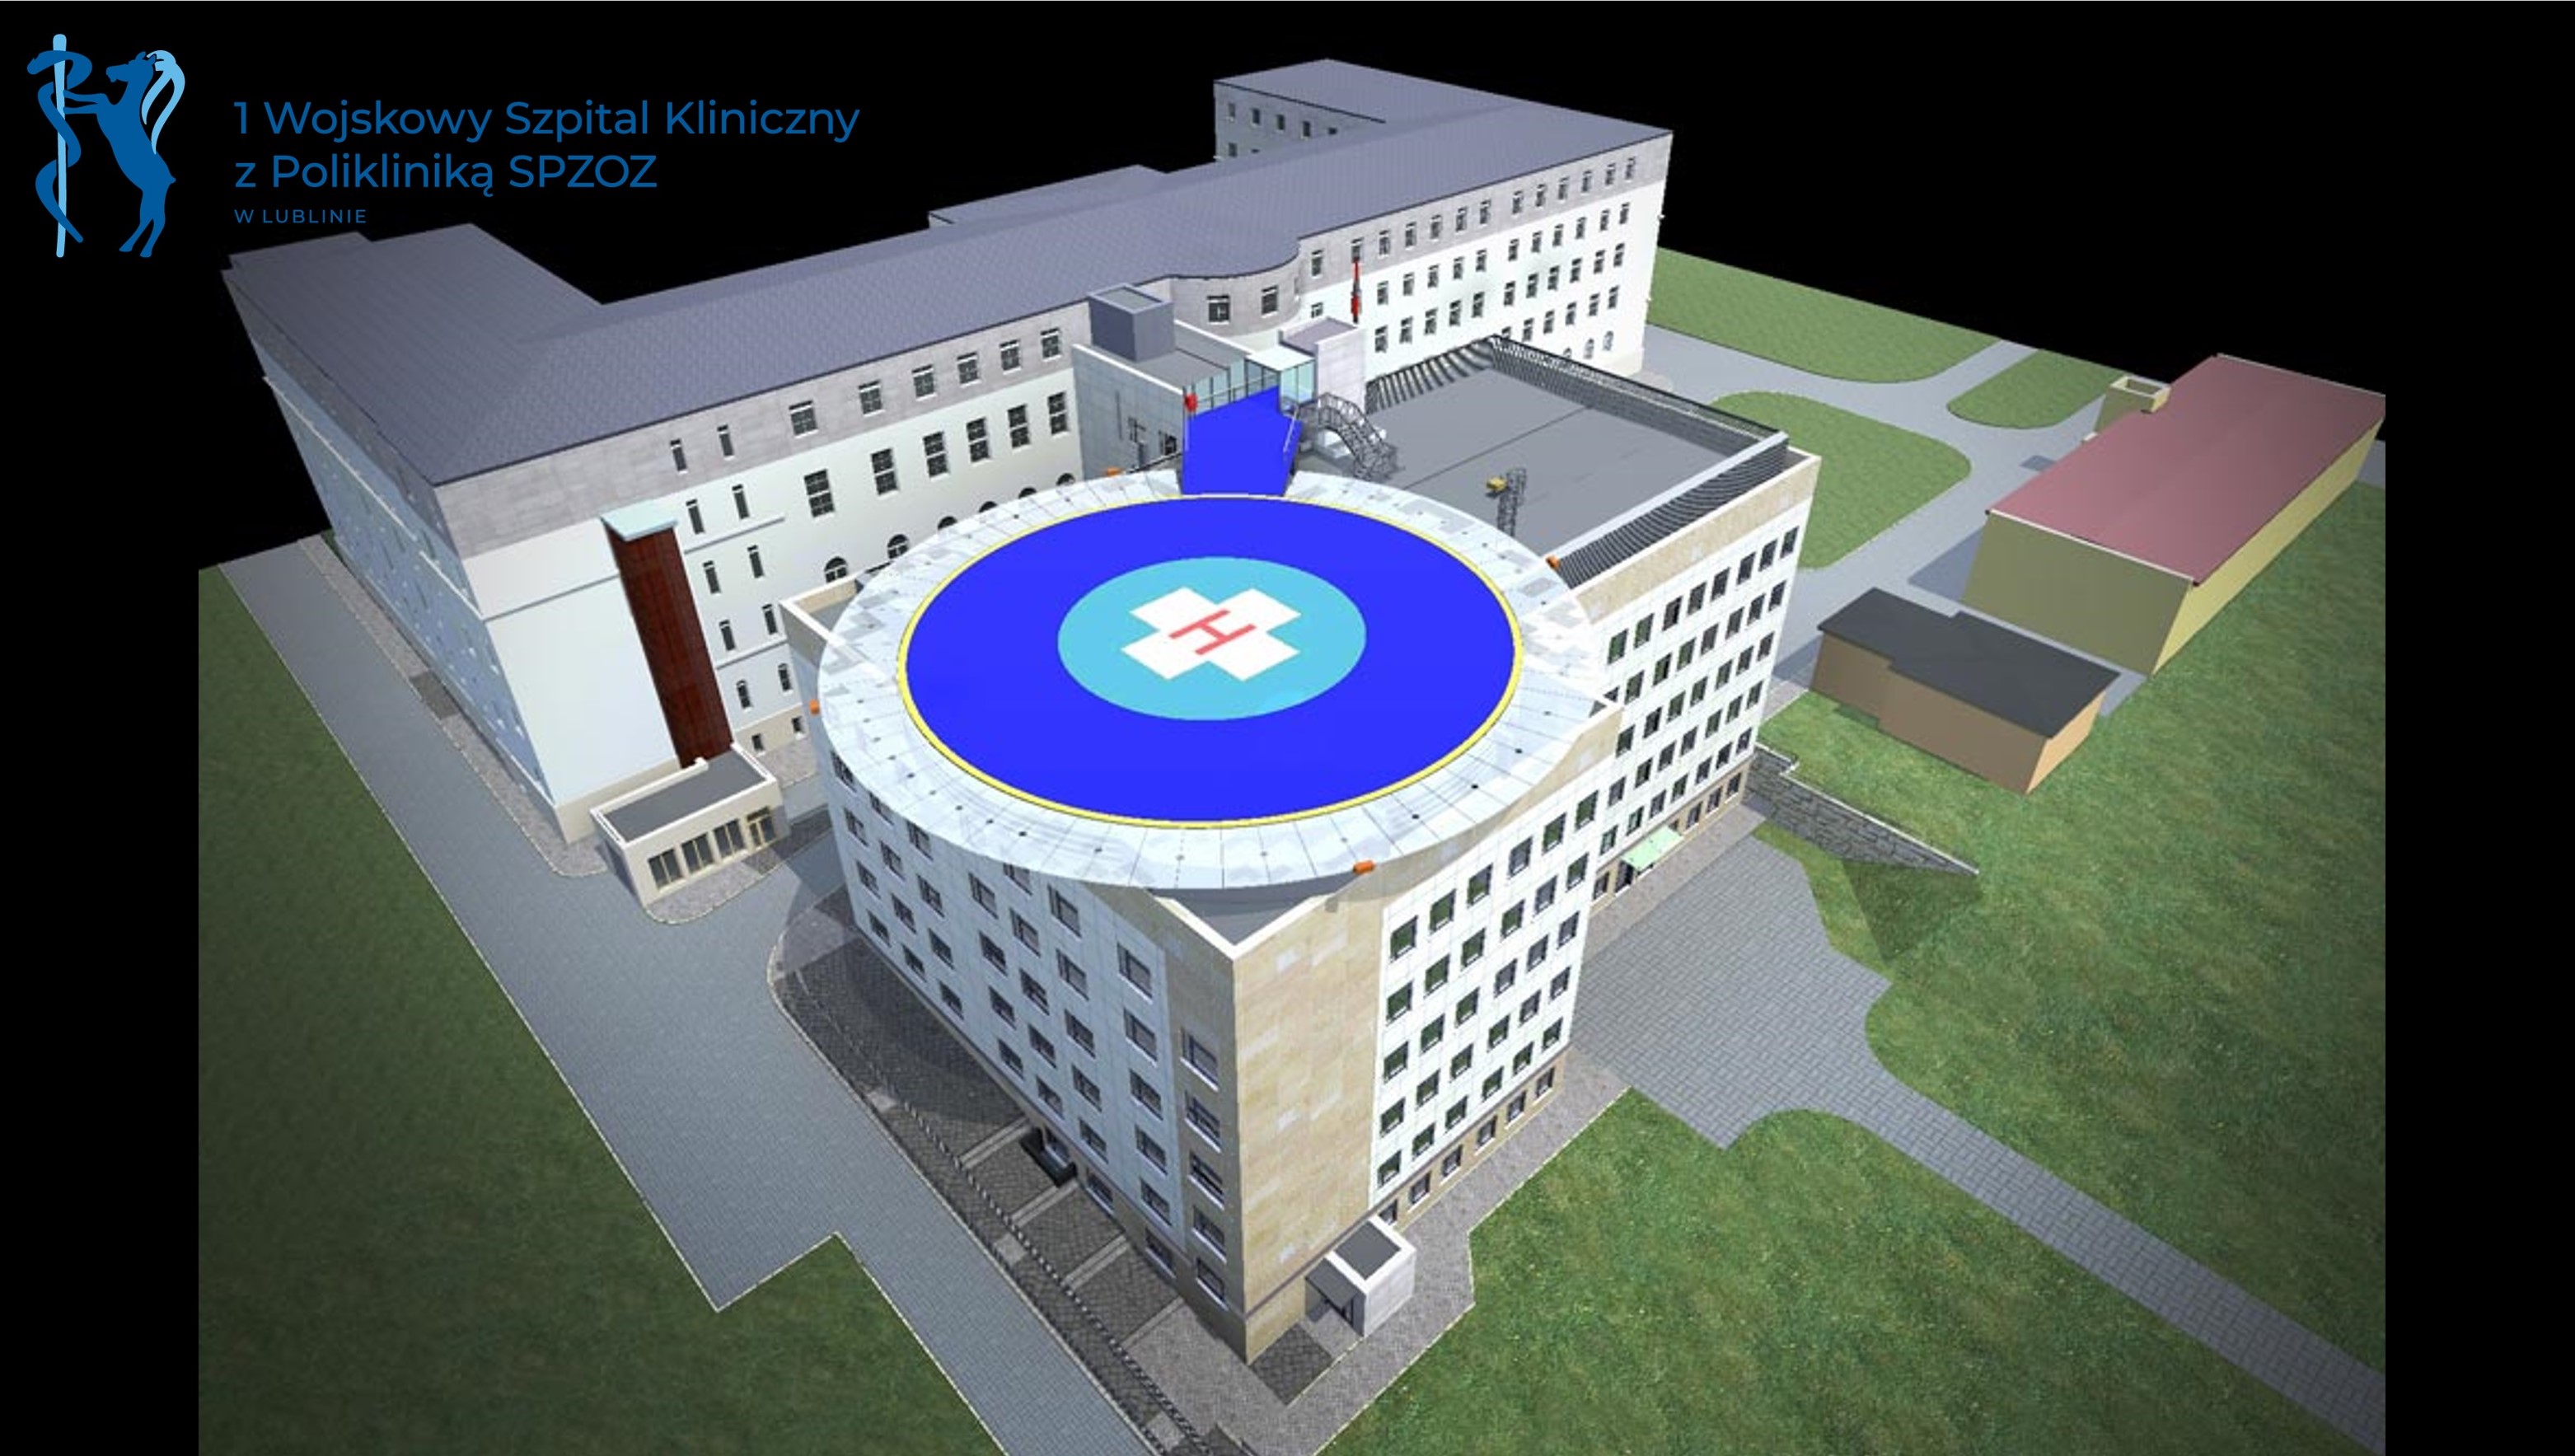 Wojskowy Szpital Kliniczny w Lublinie powiększy się. Dziś podpisano ważną umowę (zdjęcia)